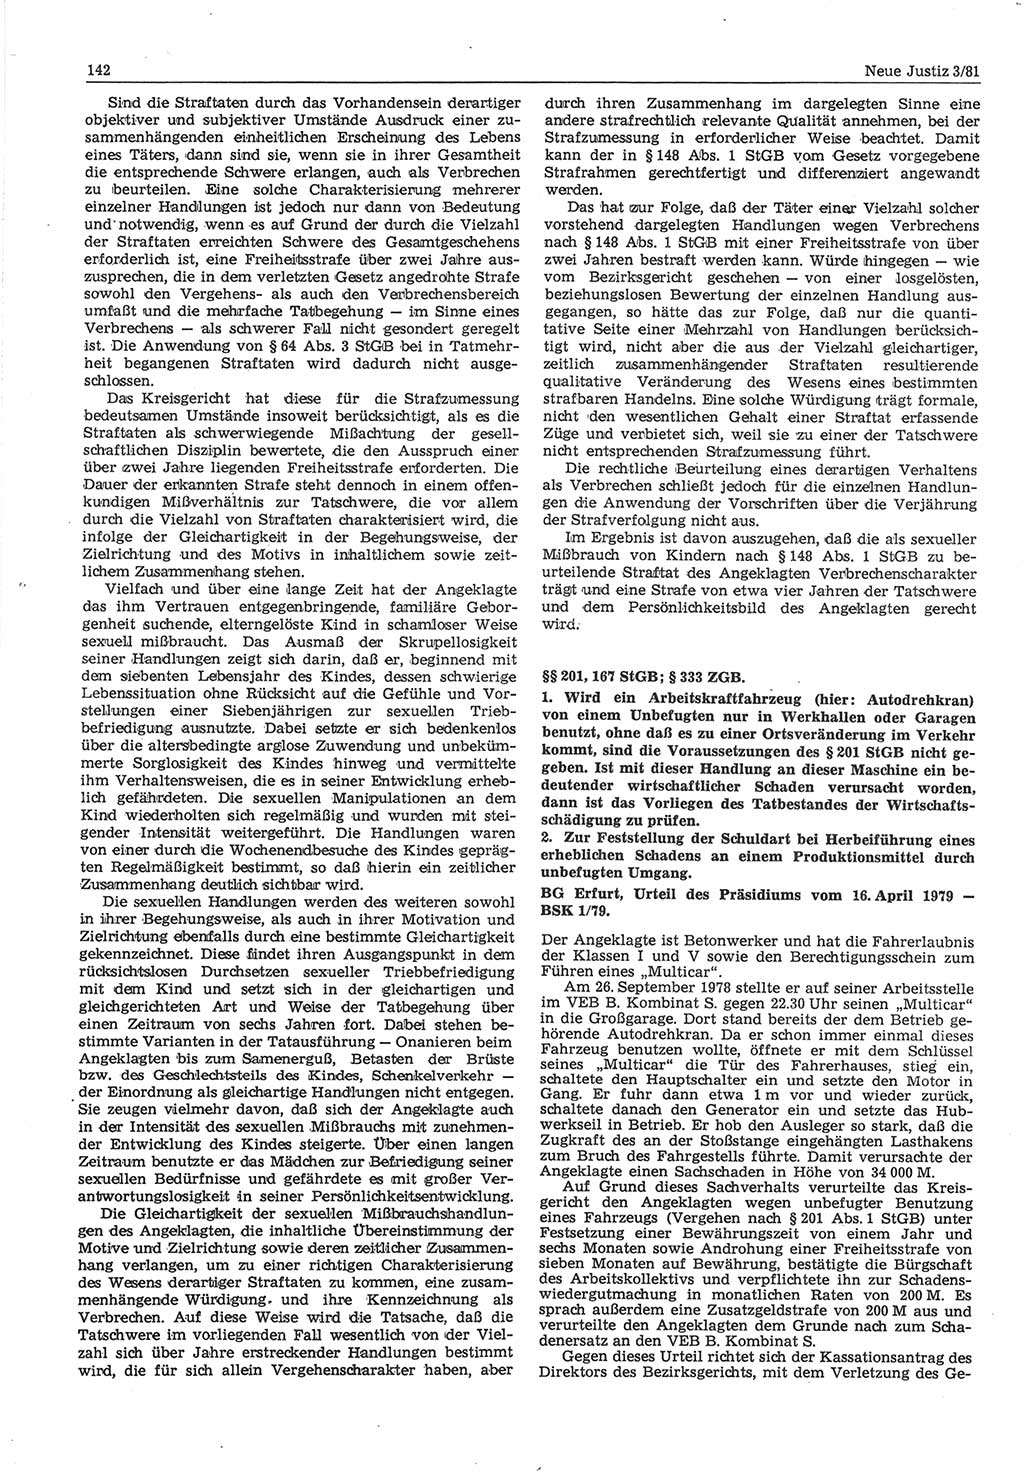 Neue Justiz (NJ), Zeitschrift für sozialistisches Recht und Gesetzlichkeit [Deutsche Demokratische Republik (DDR)], 35. Jahrgang 1981, Seite 142 (NJ DDR 1981, S. 142)